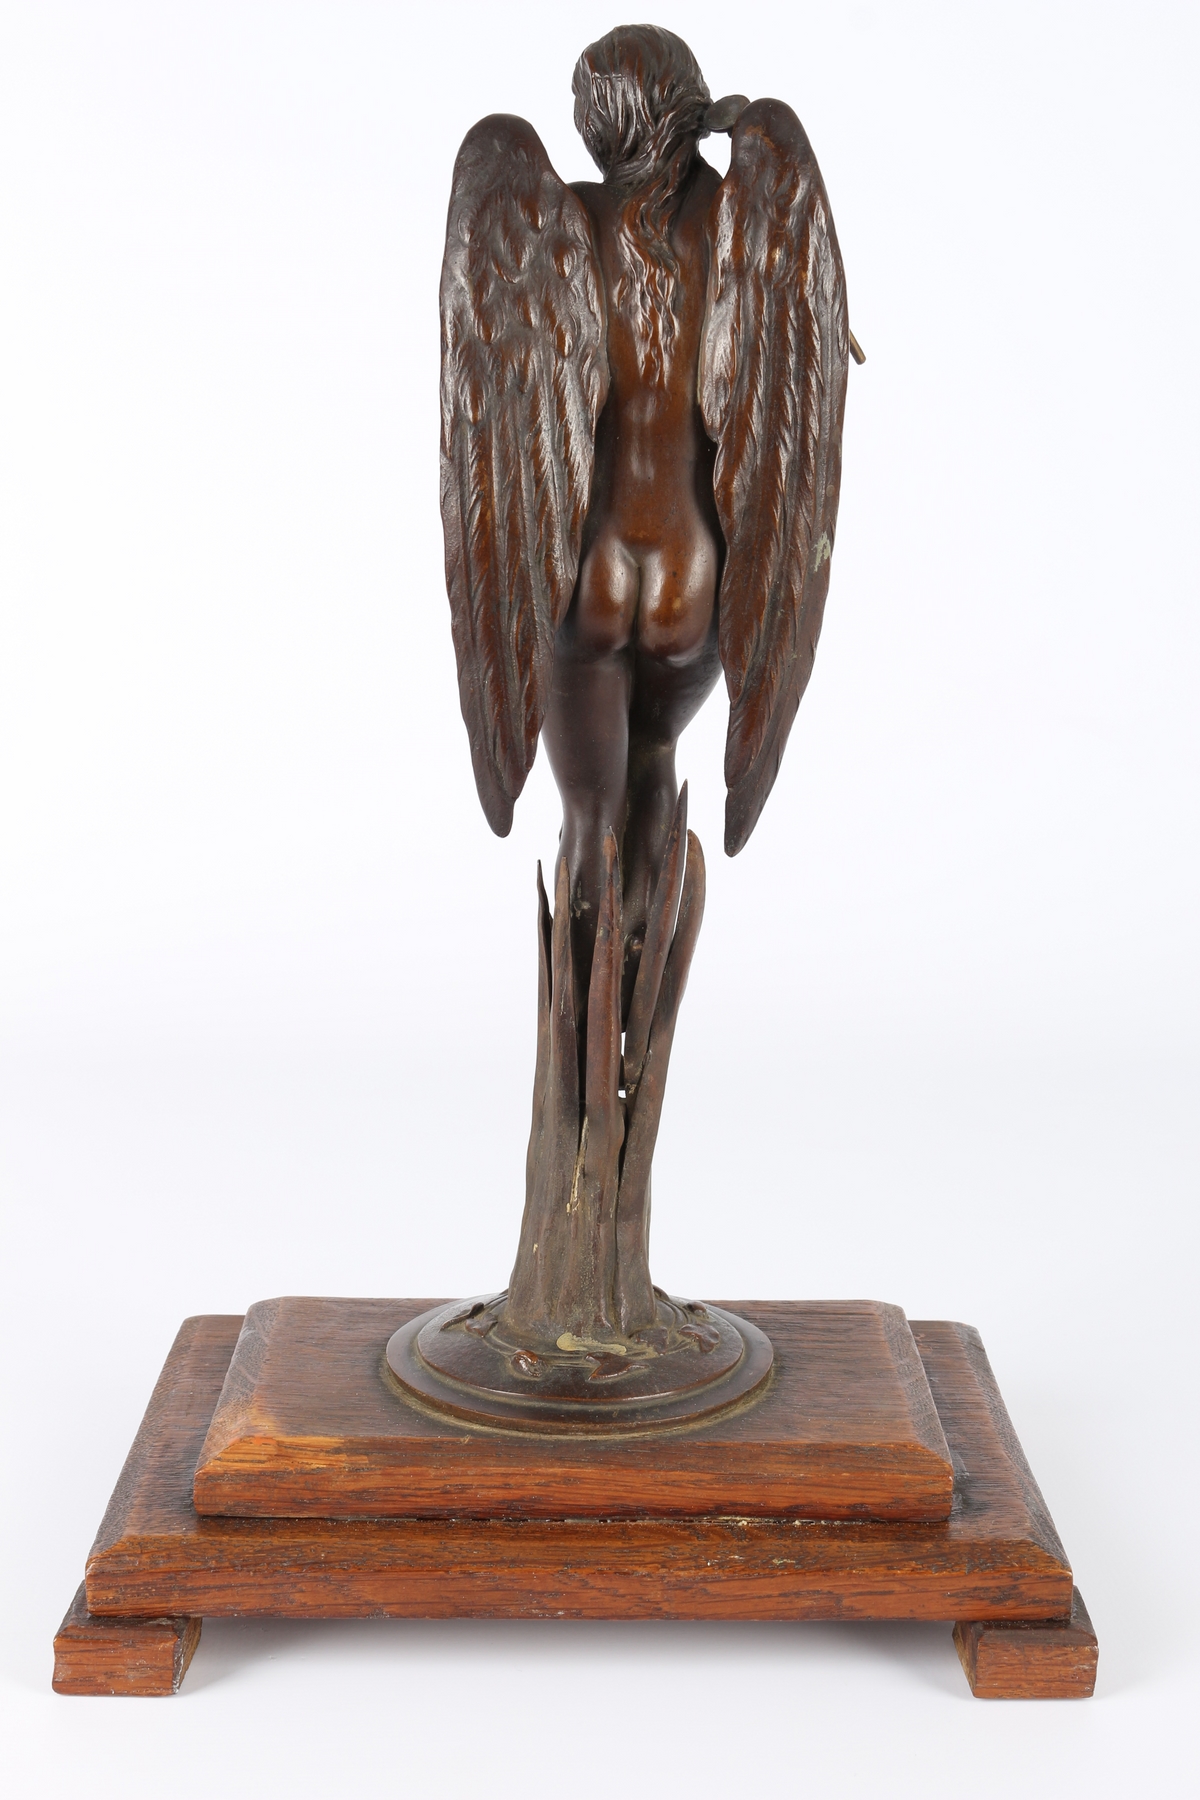 Bronze Engel mit Fanfare um 1900, bronce angel with trumpet around 1900, - Image 3 of 5